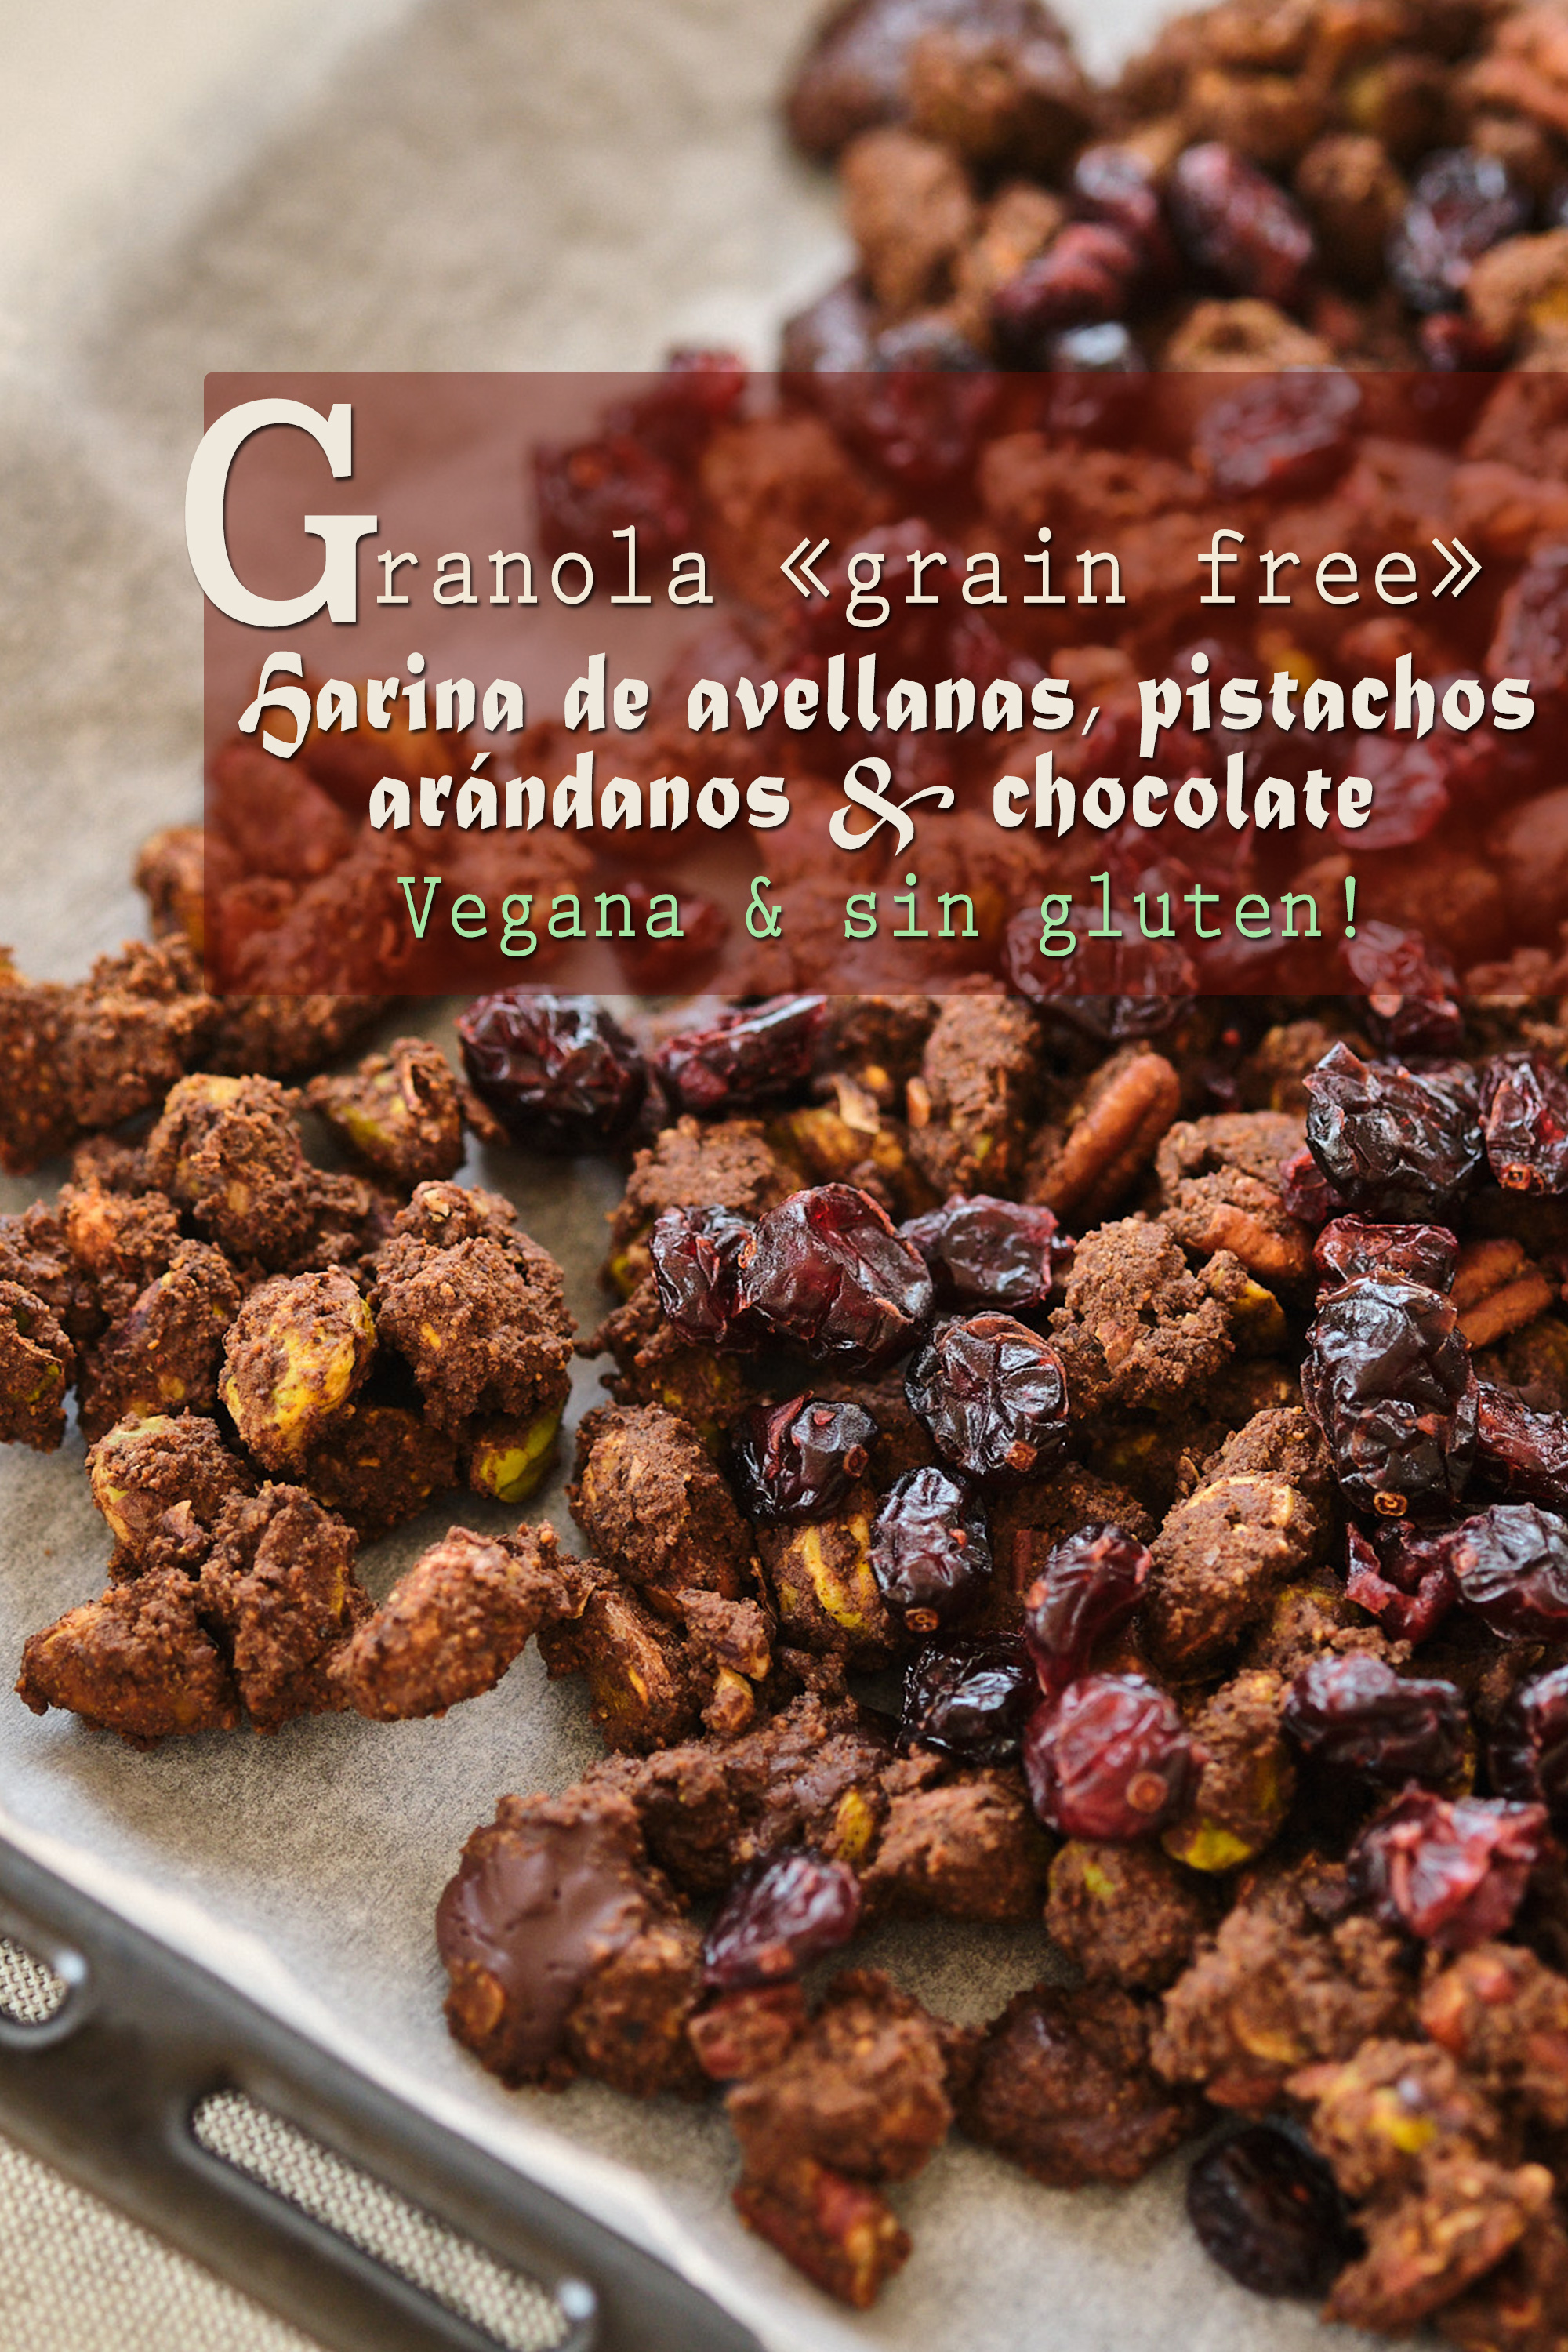 Granola « grain free » con harina de avellanas, pistachos, arándanos y chocolate negro (vegana, sin gluten)